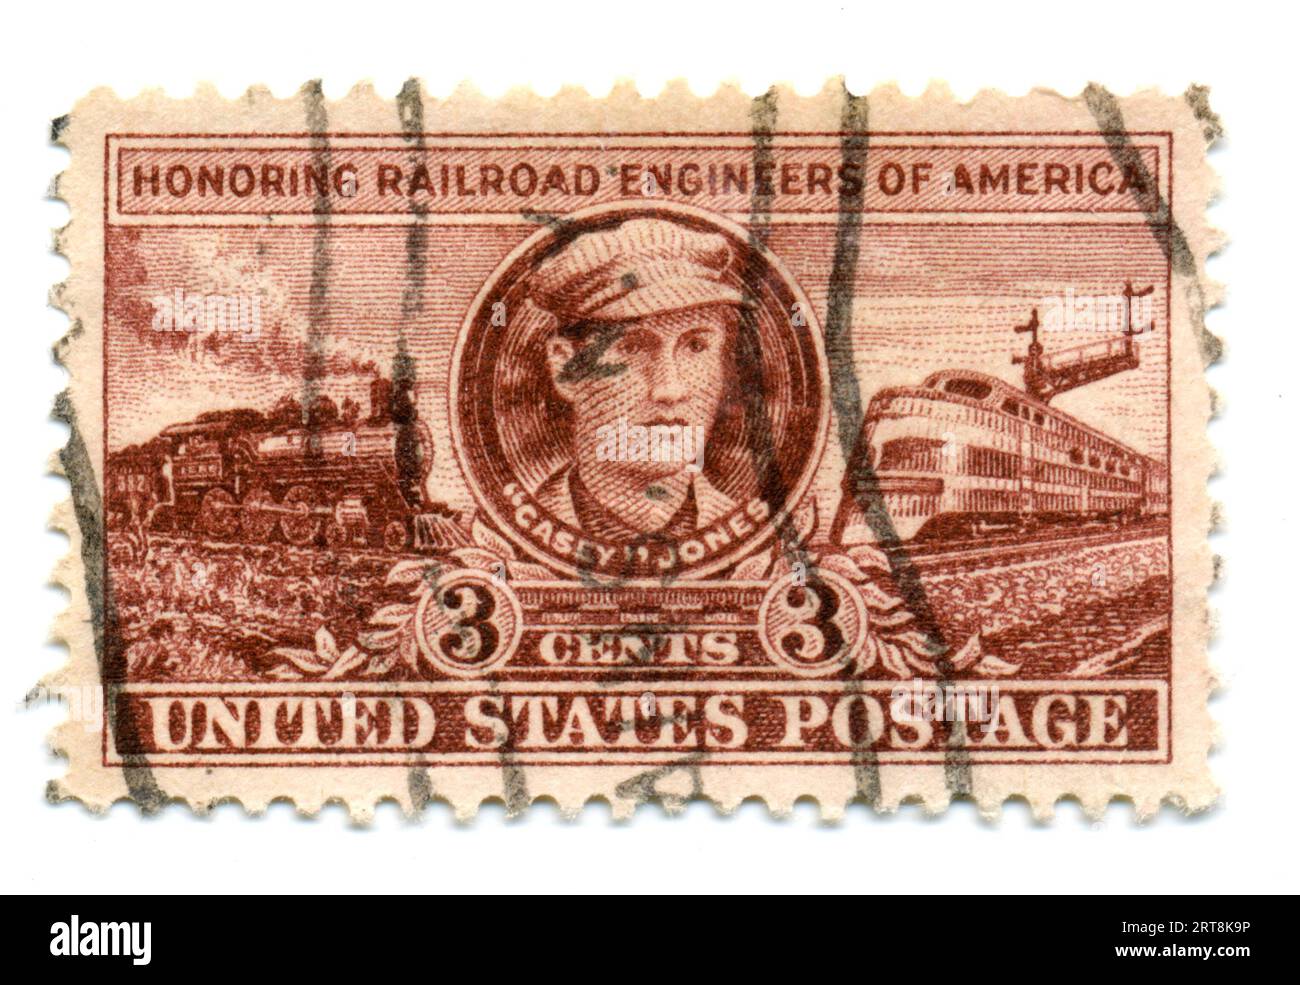 Un francobollo statunitense cancellato in onore degli ingegneri ferroviari americani emesso nel 1950. Foto Stock